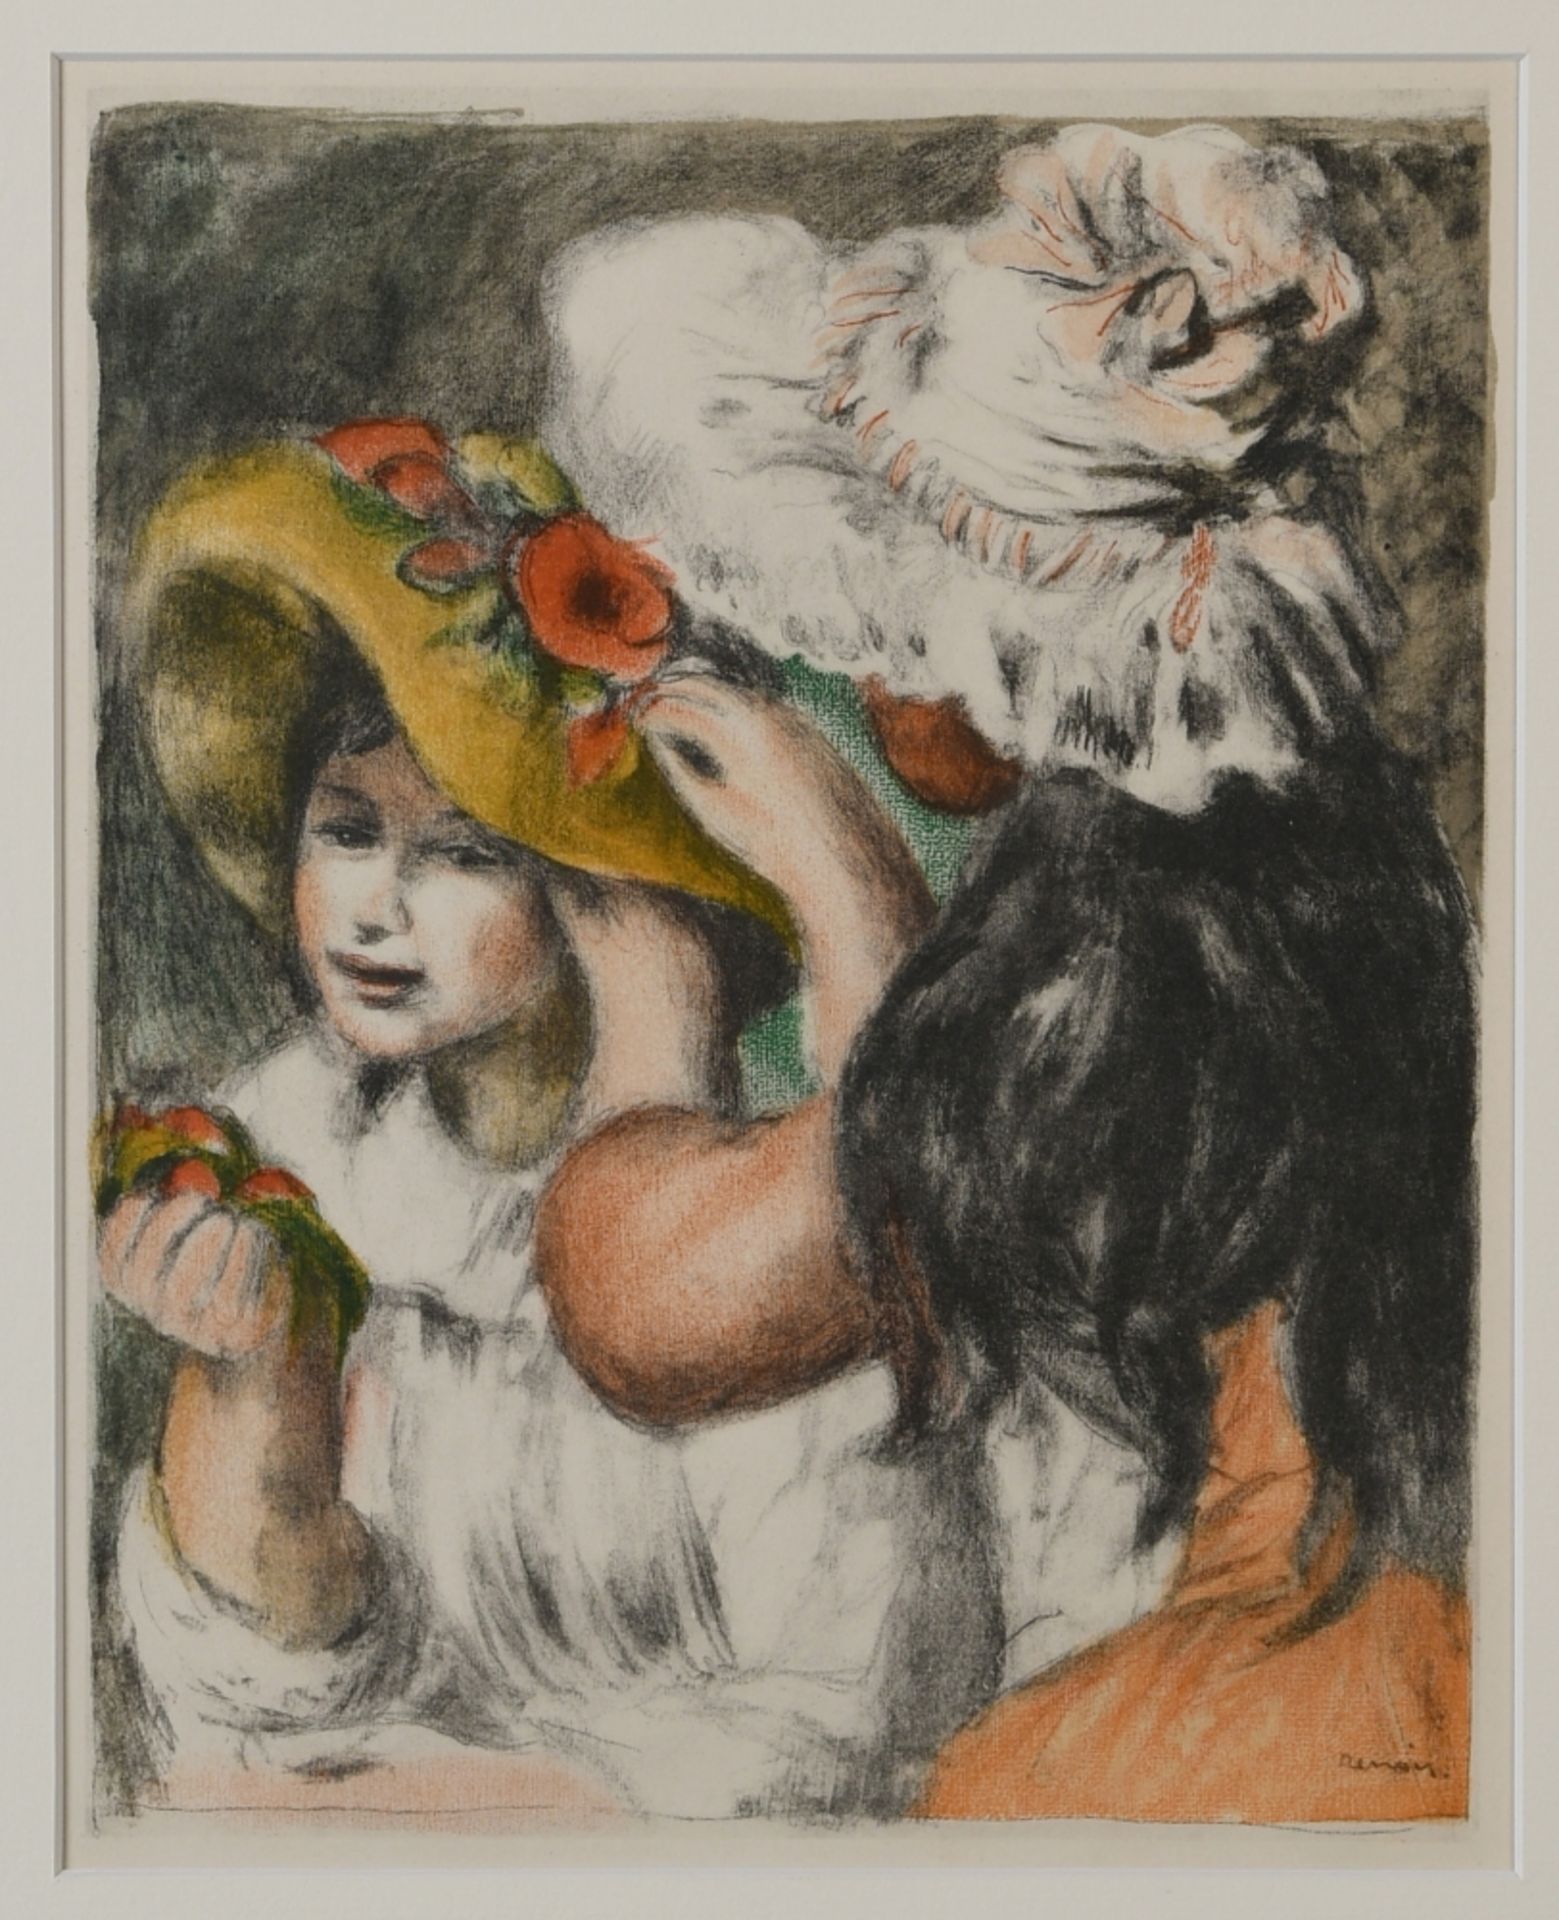 Renoir, Auguste, nach, 1841 Limoges - 1919 Cagnes